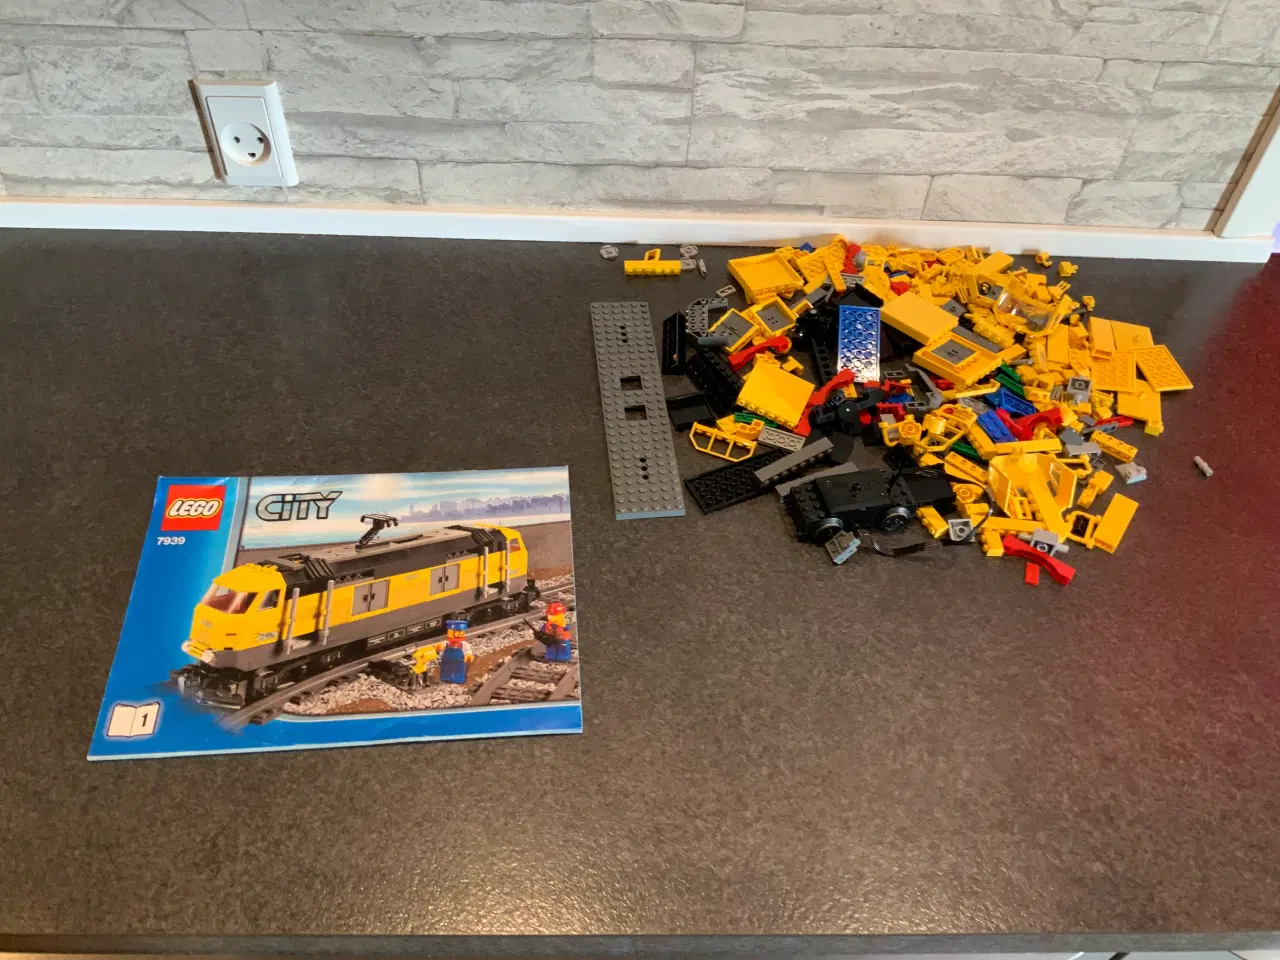 Billede 1 - Lego city 7939